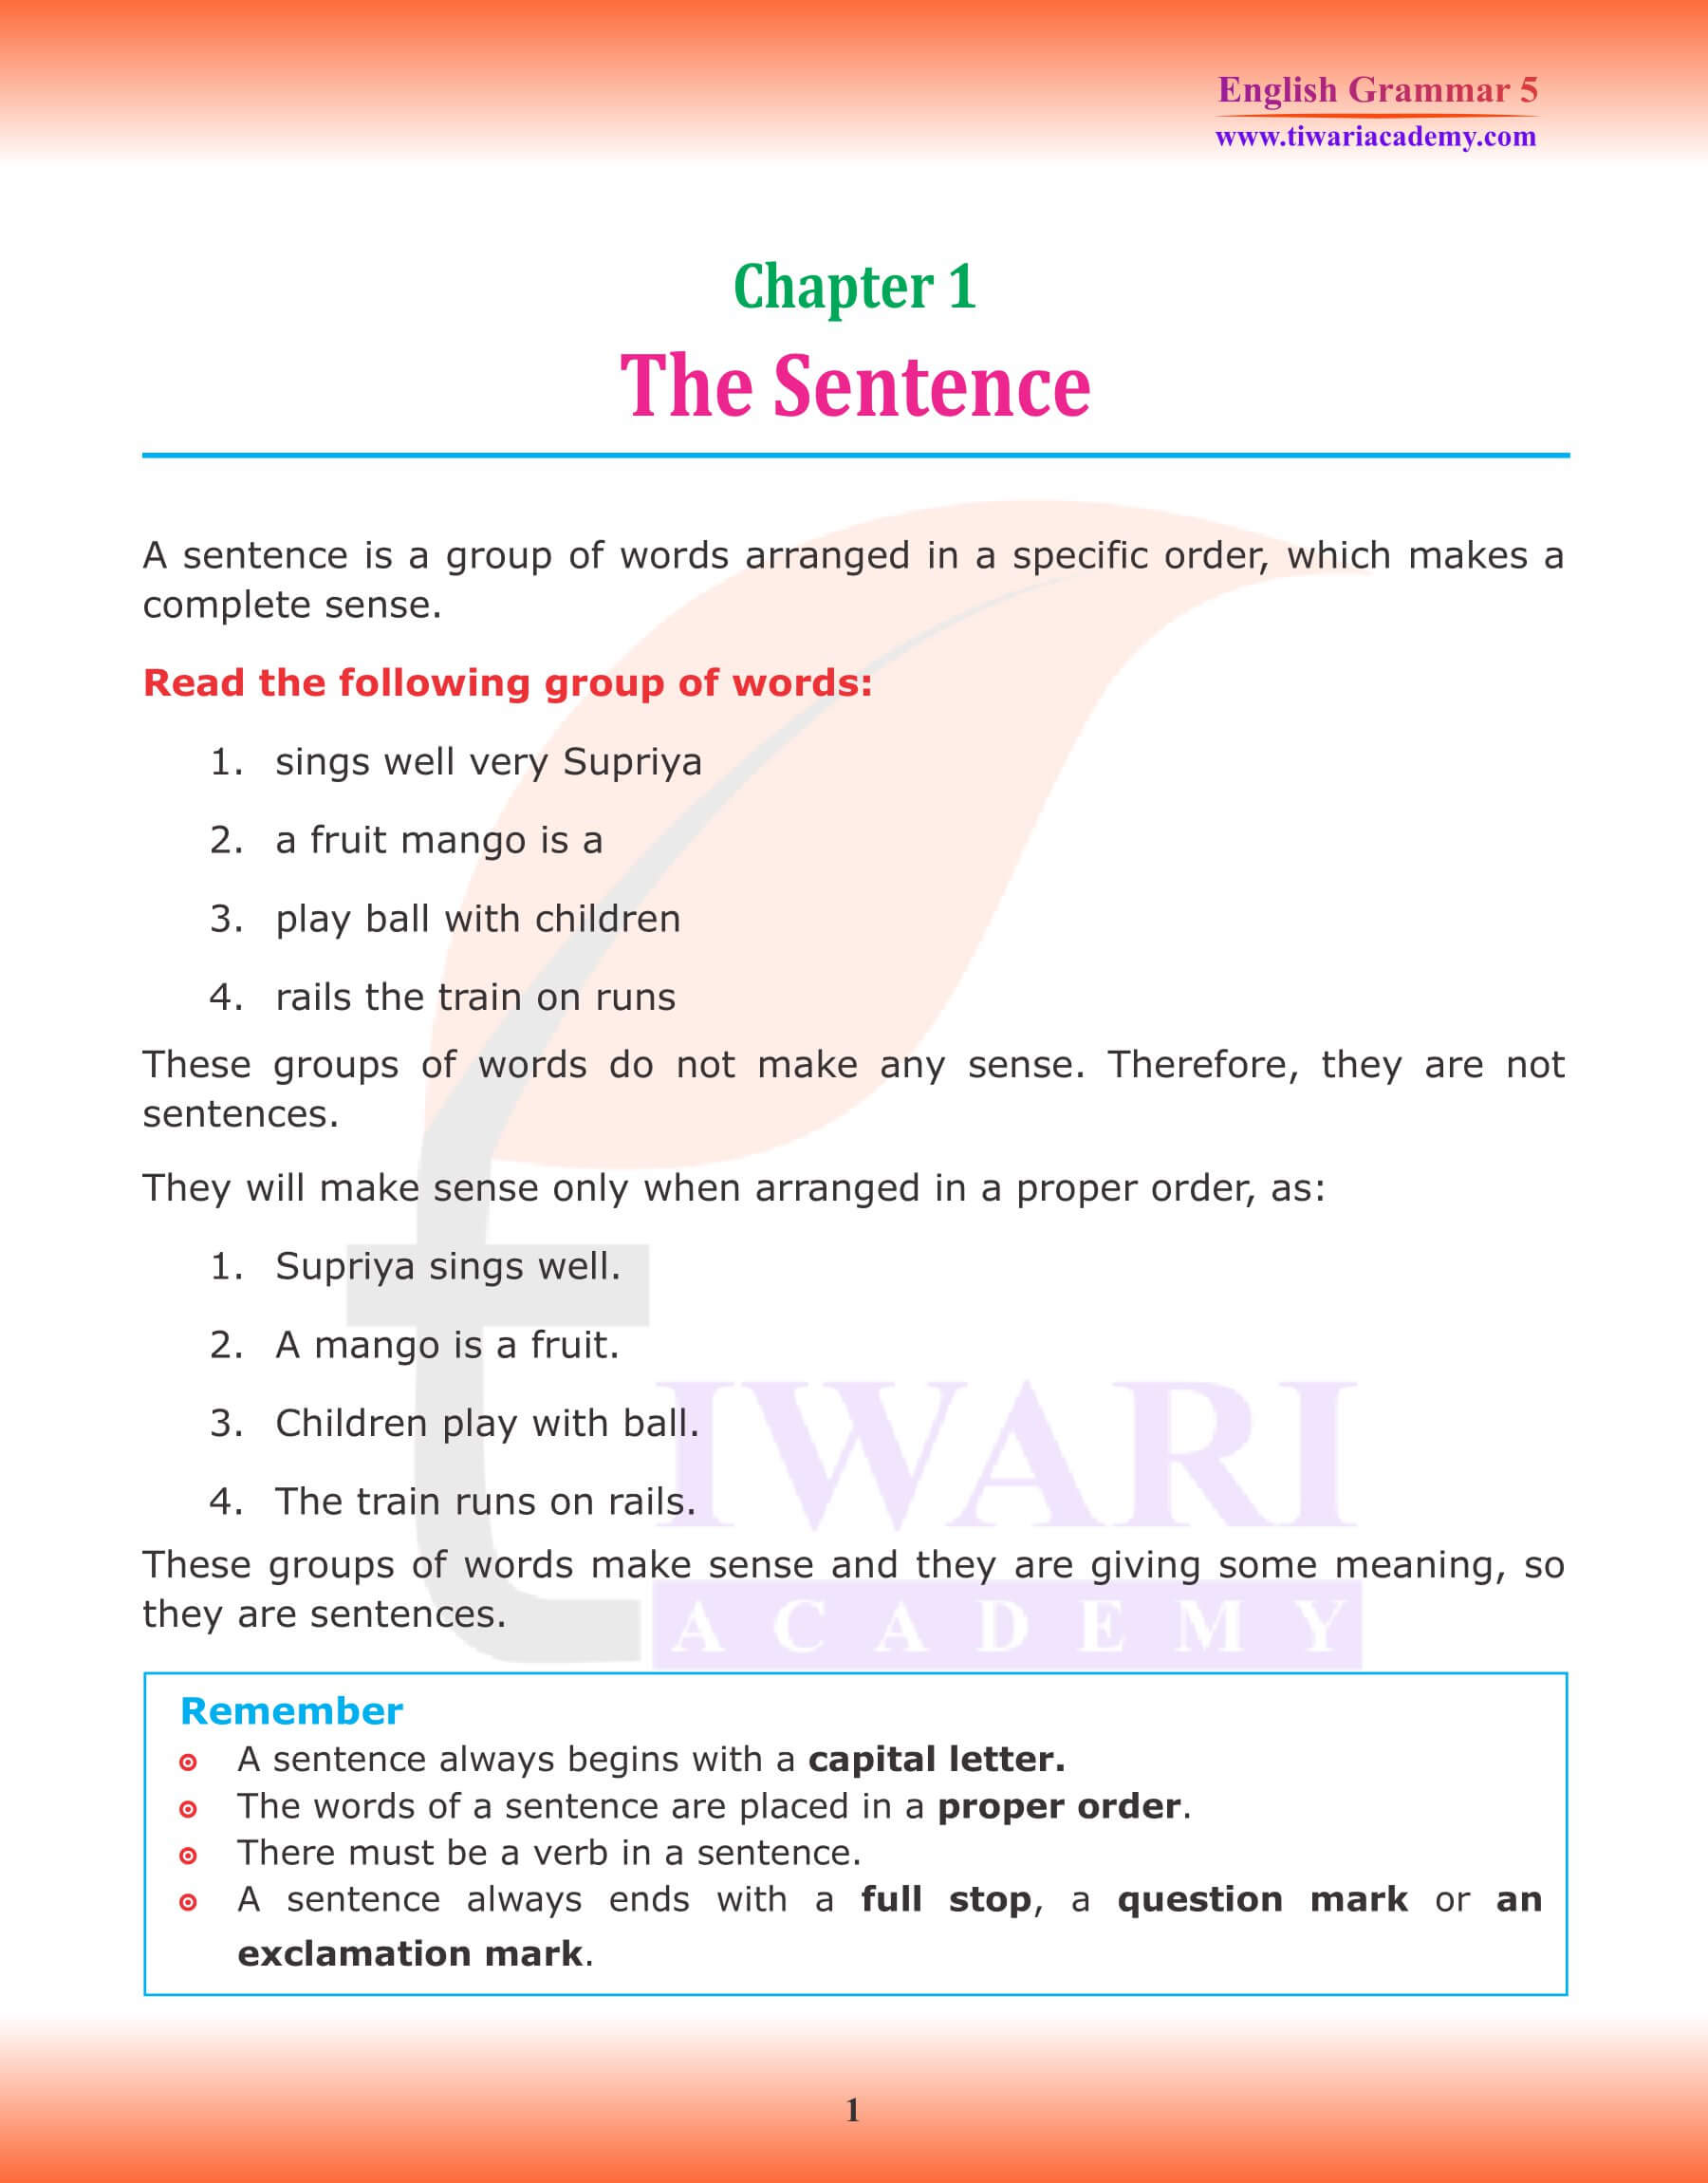 Class 5 Grammar Chapter 1 The Sentence